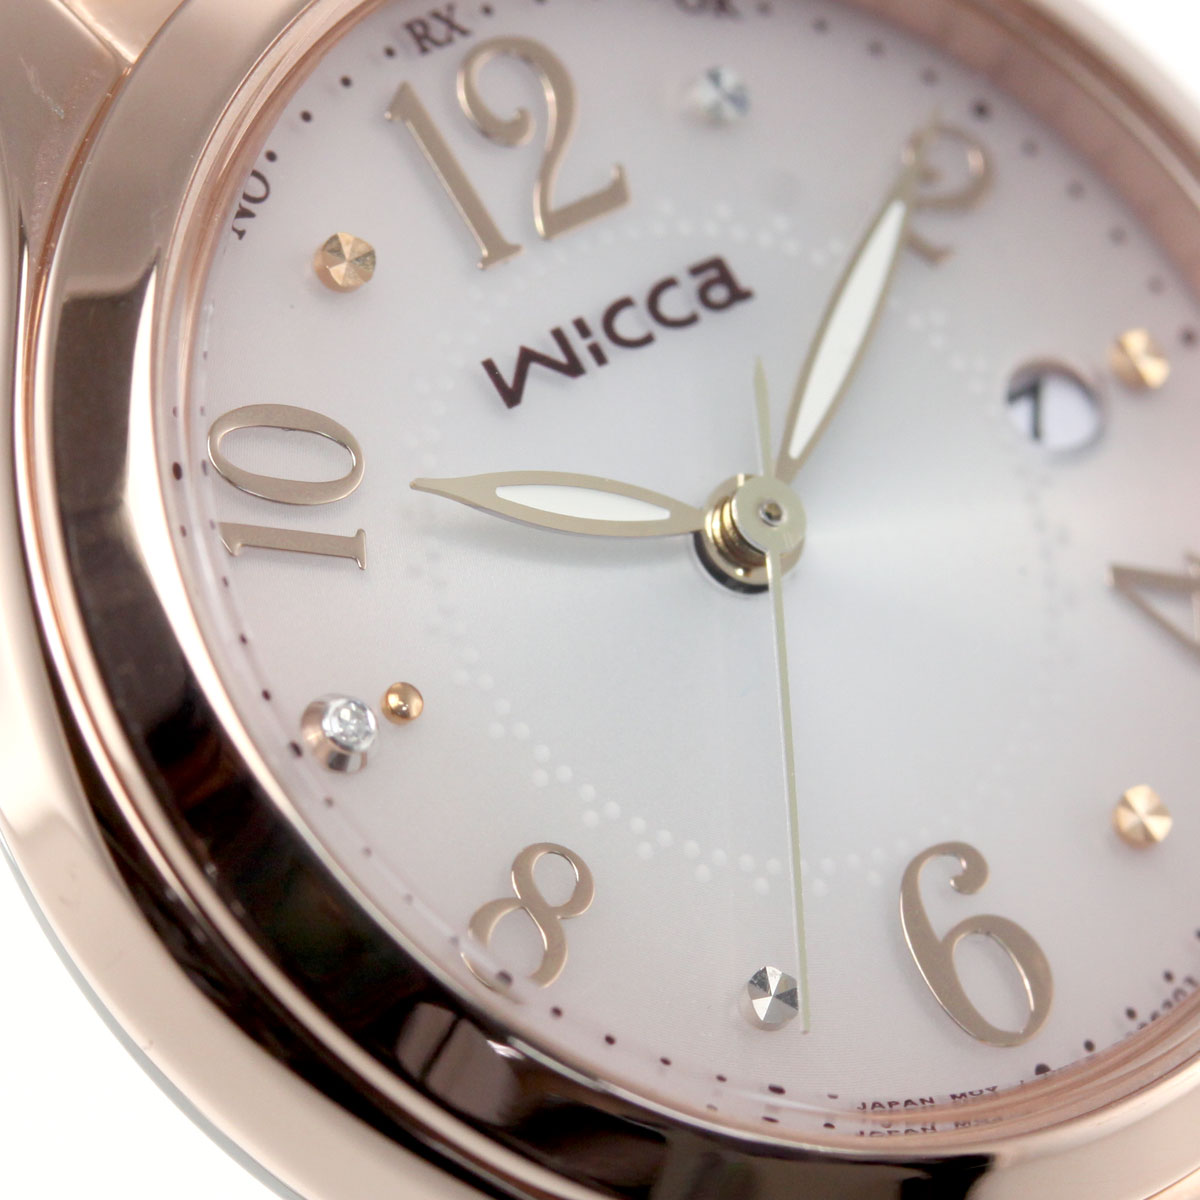 シチズン ウィッカ CITIZEN wicca ソーラーテック 電波時計 腕時計 レディース ハッピーダイアリー KS1-261-91